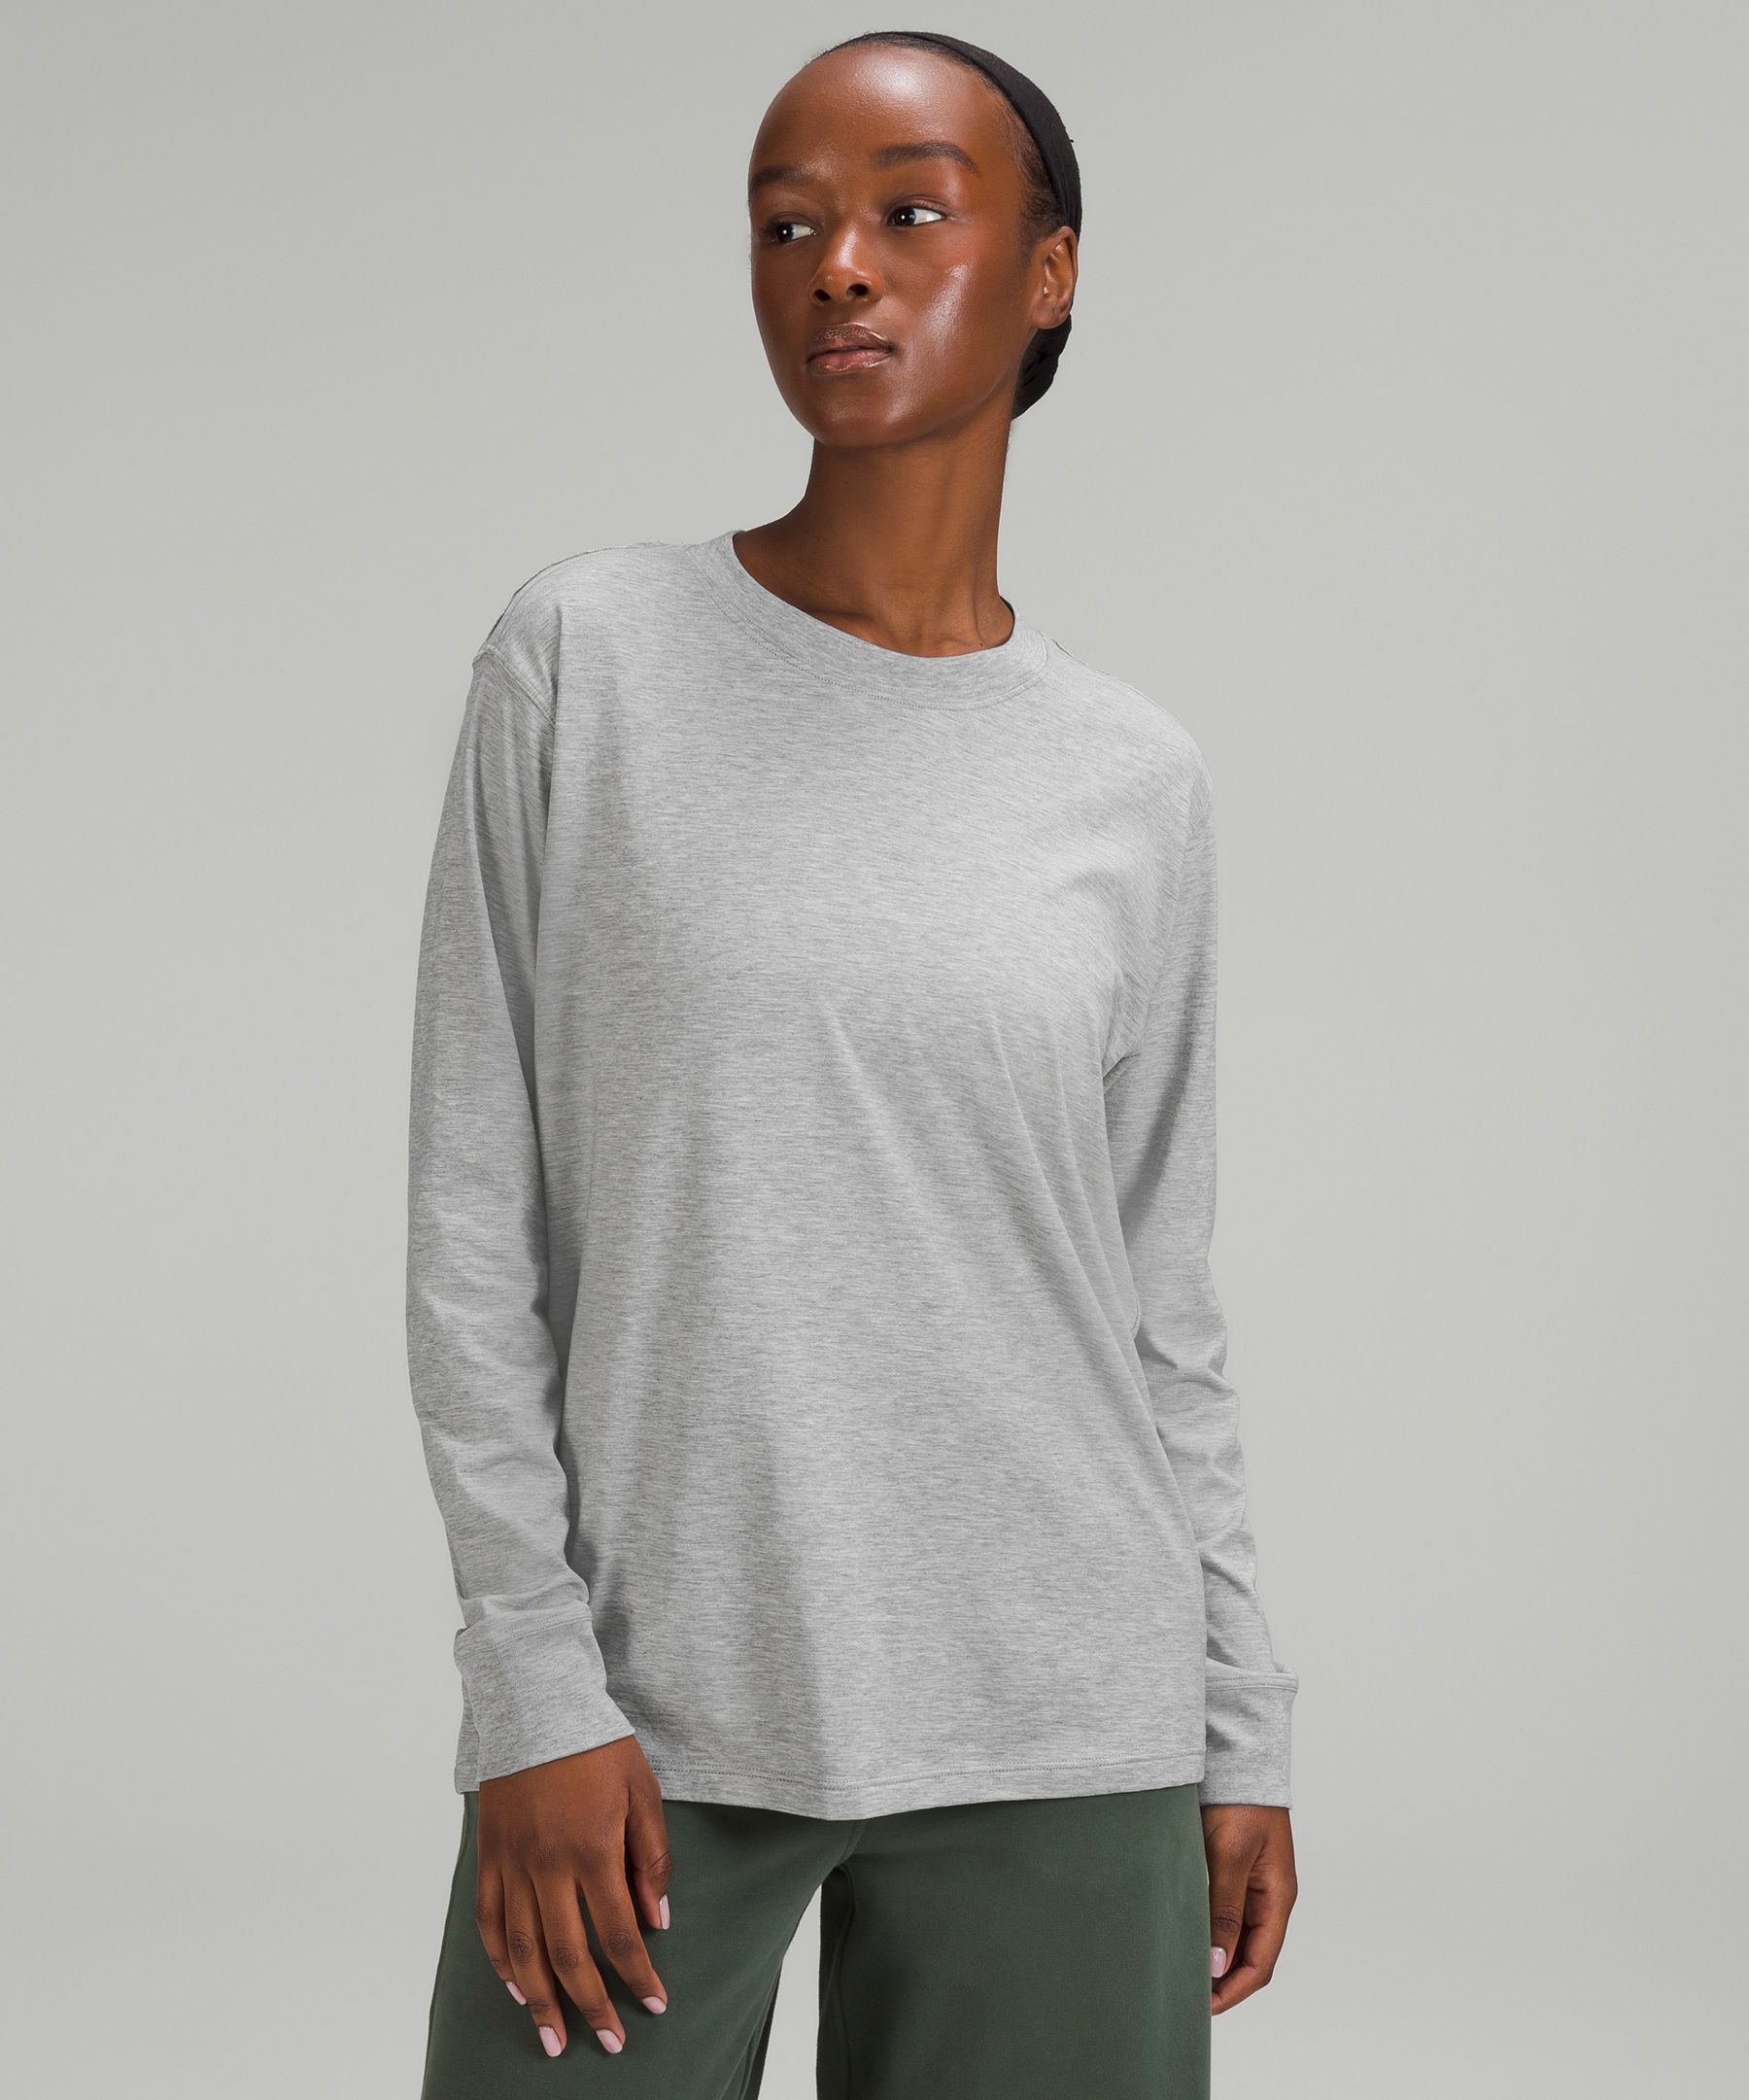 Lululemon Women's Long Sleeve Quarter Zip Activewear T-shirt Gray